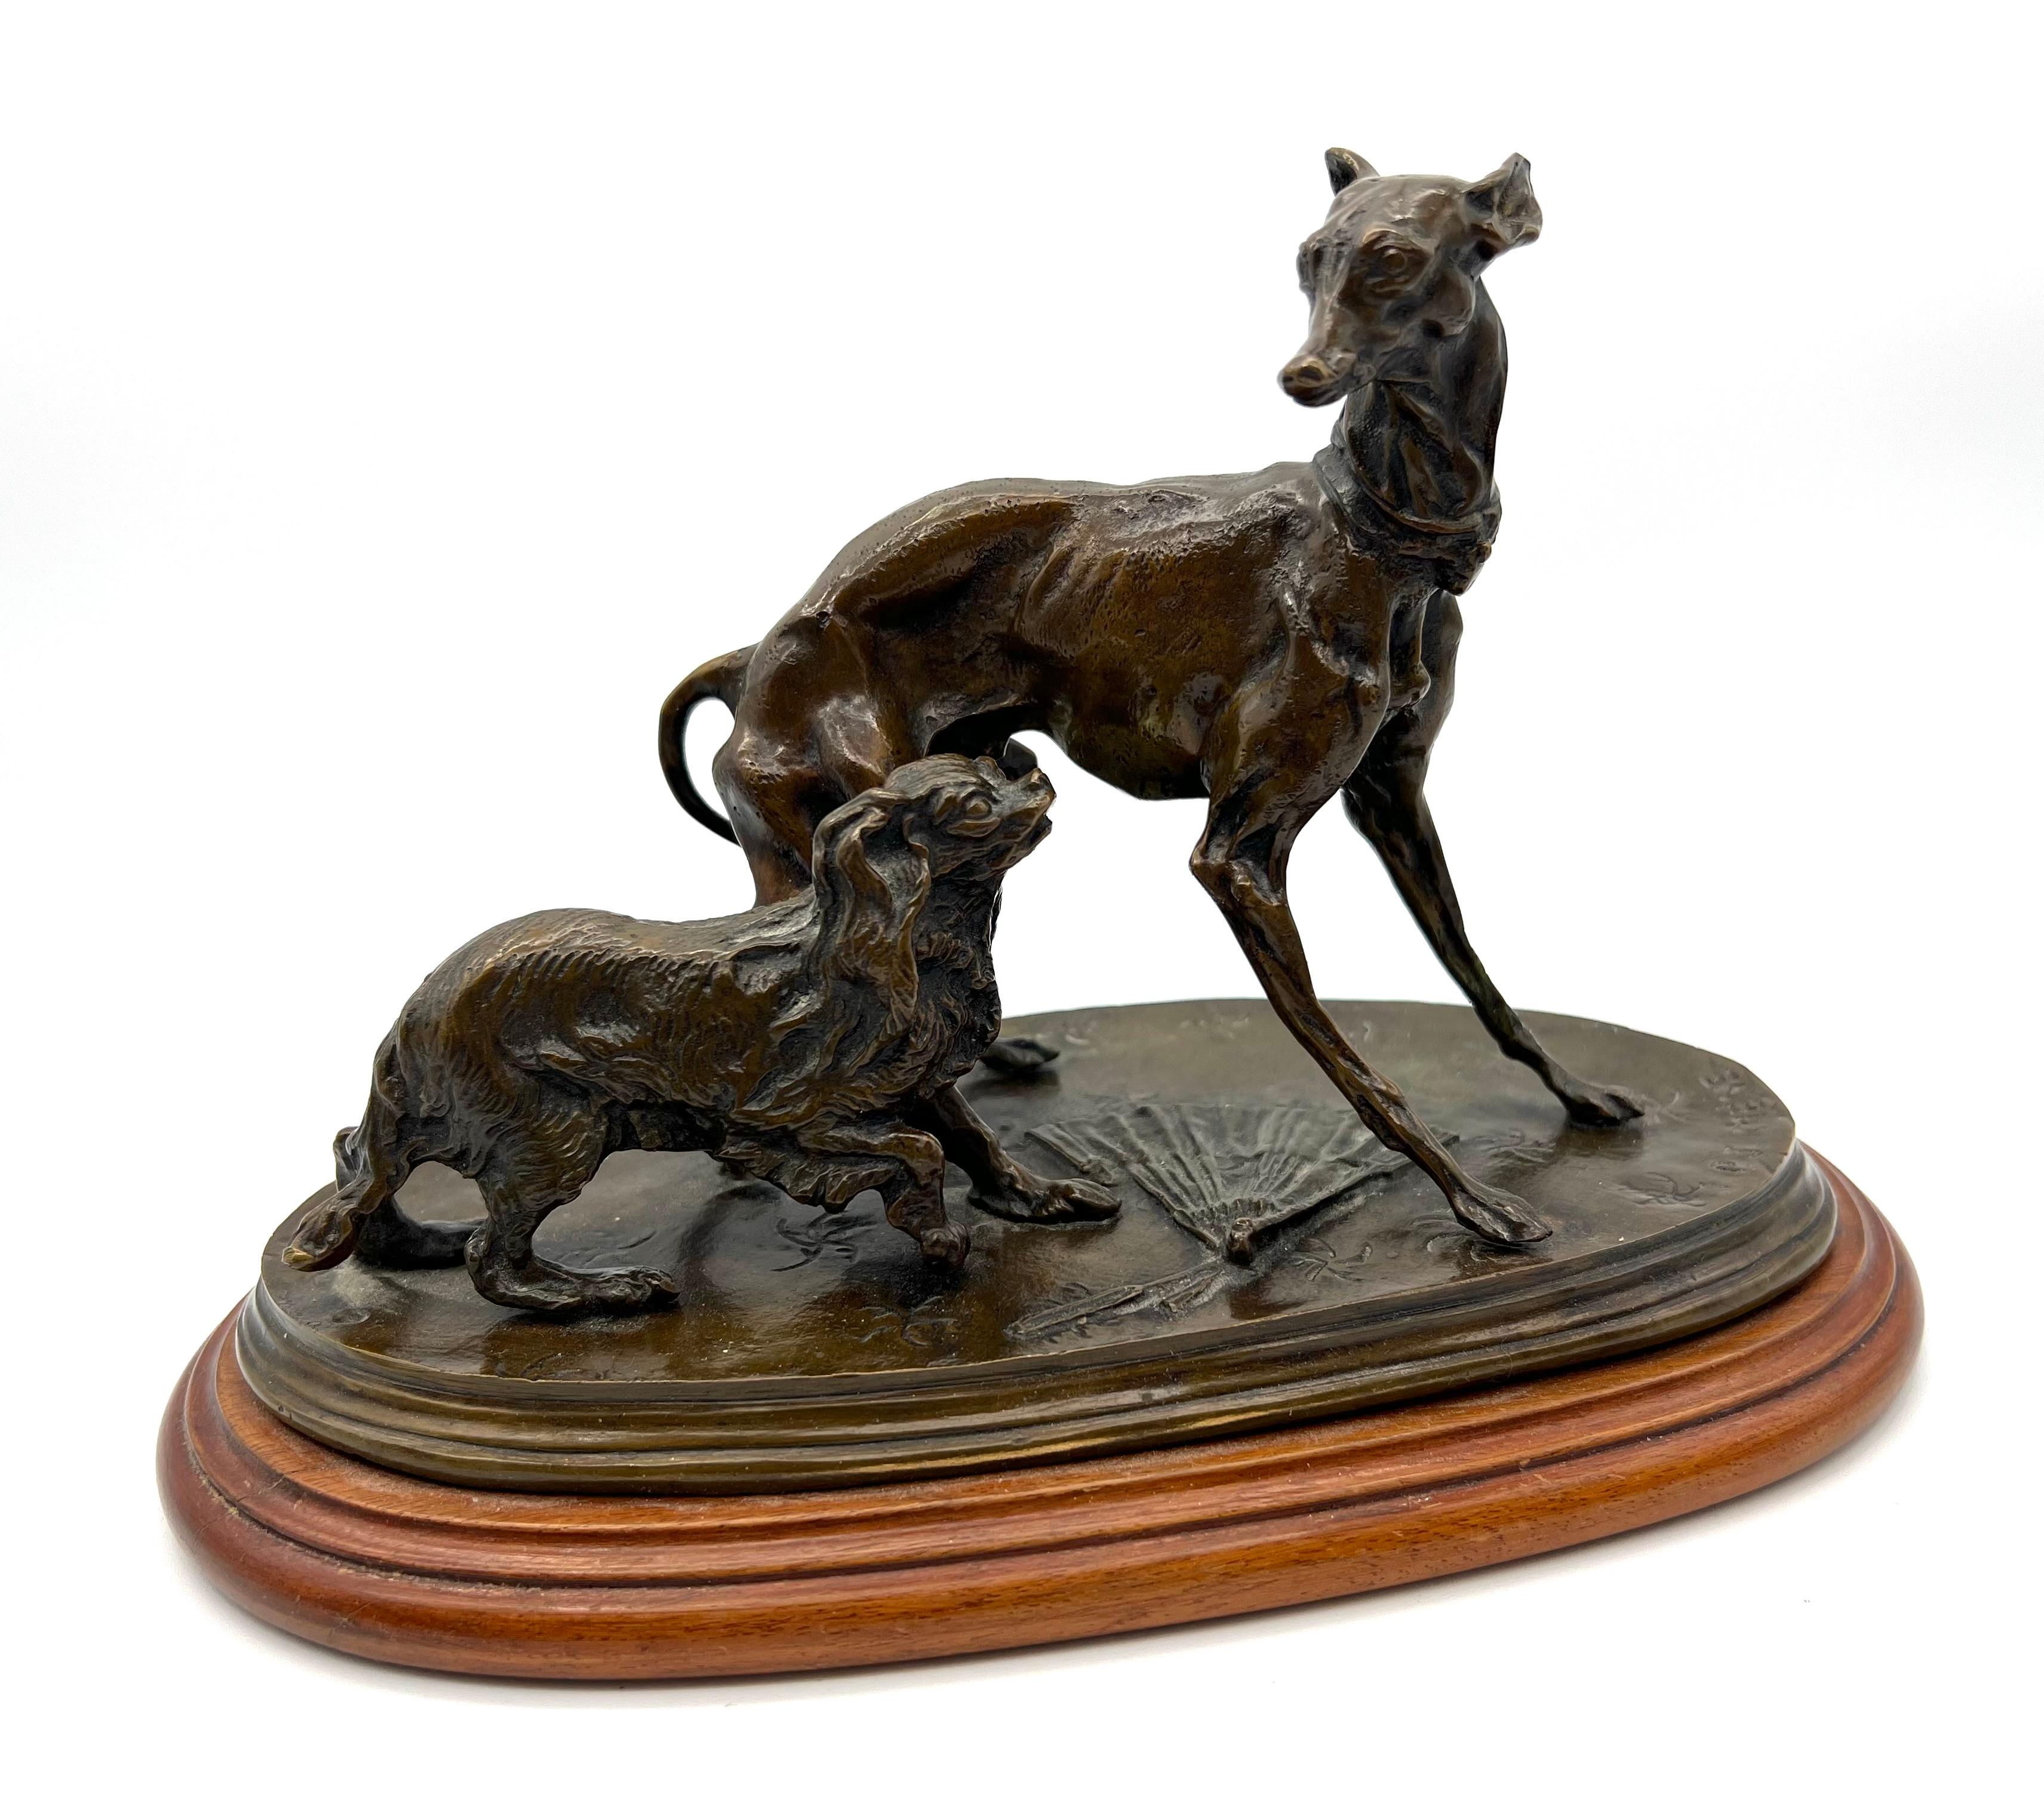 Superbe groupe animalier en bronze à patine brune représentant deux chiens, un lévrier et un King - Charles , par Pierre - Jules Mêne .
Signature du sculpteur 